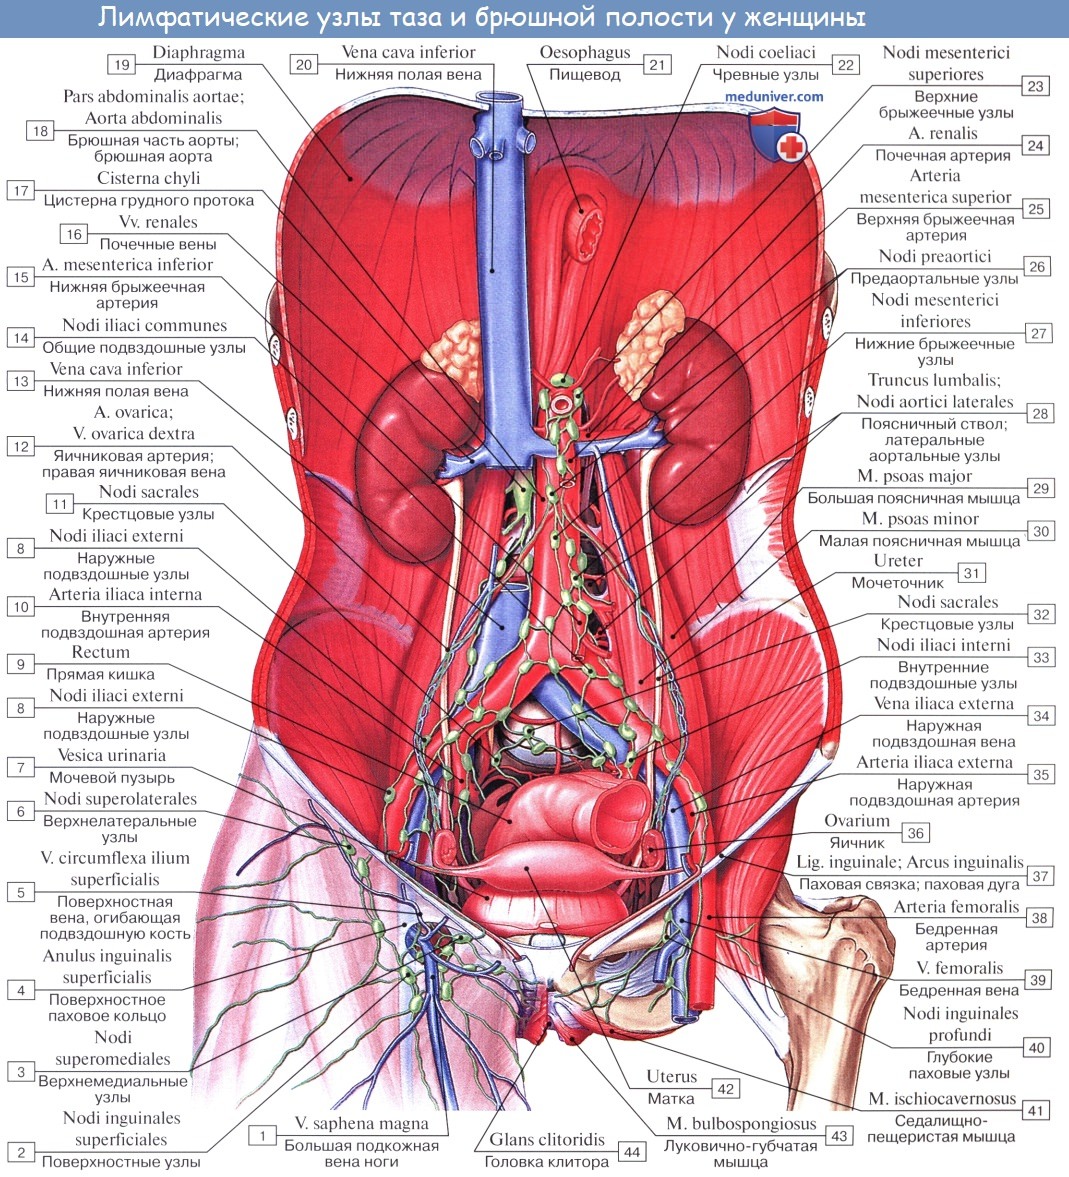 Анатомия: Кровоснабжение мочеточника. Сосуды и лимфатический отток от мочеточника. Иннервация мочеточника